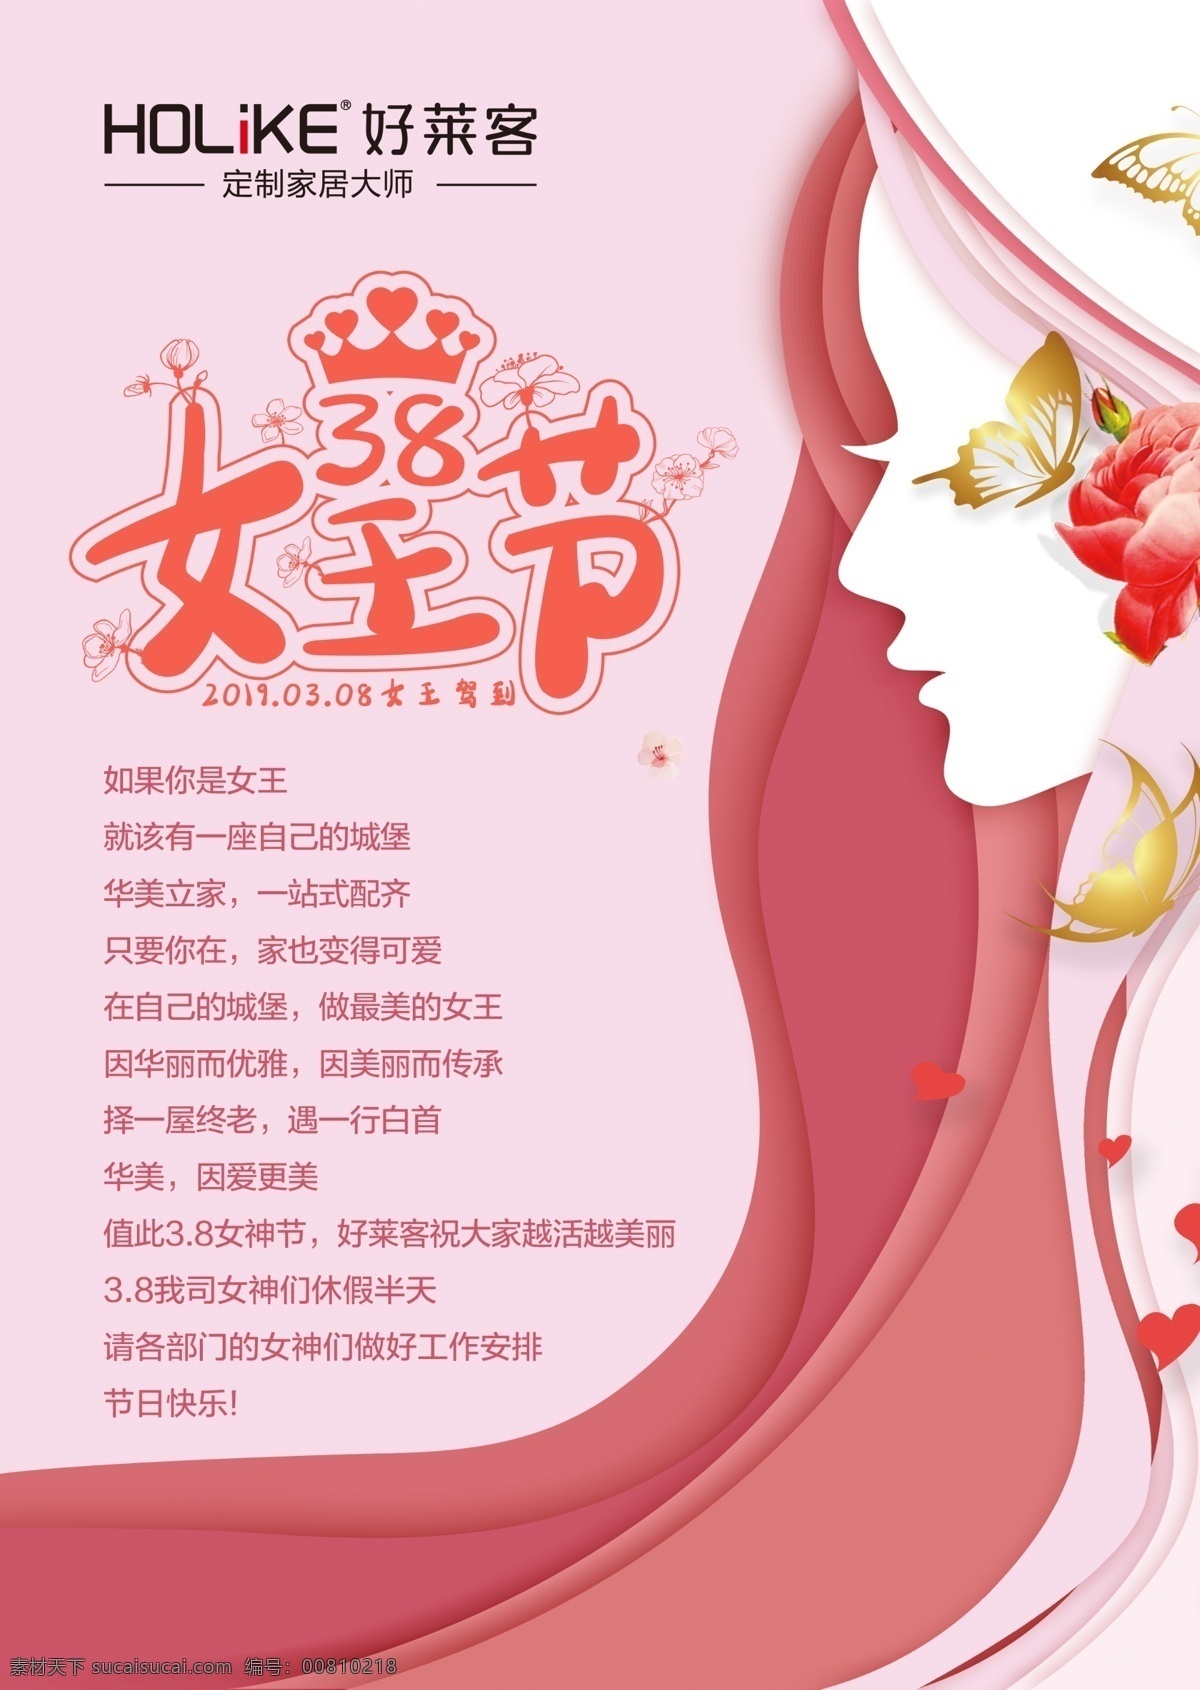 妇女节 38 女王节 女神节 女王 美女 女神 文化艺术 节日庆祝